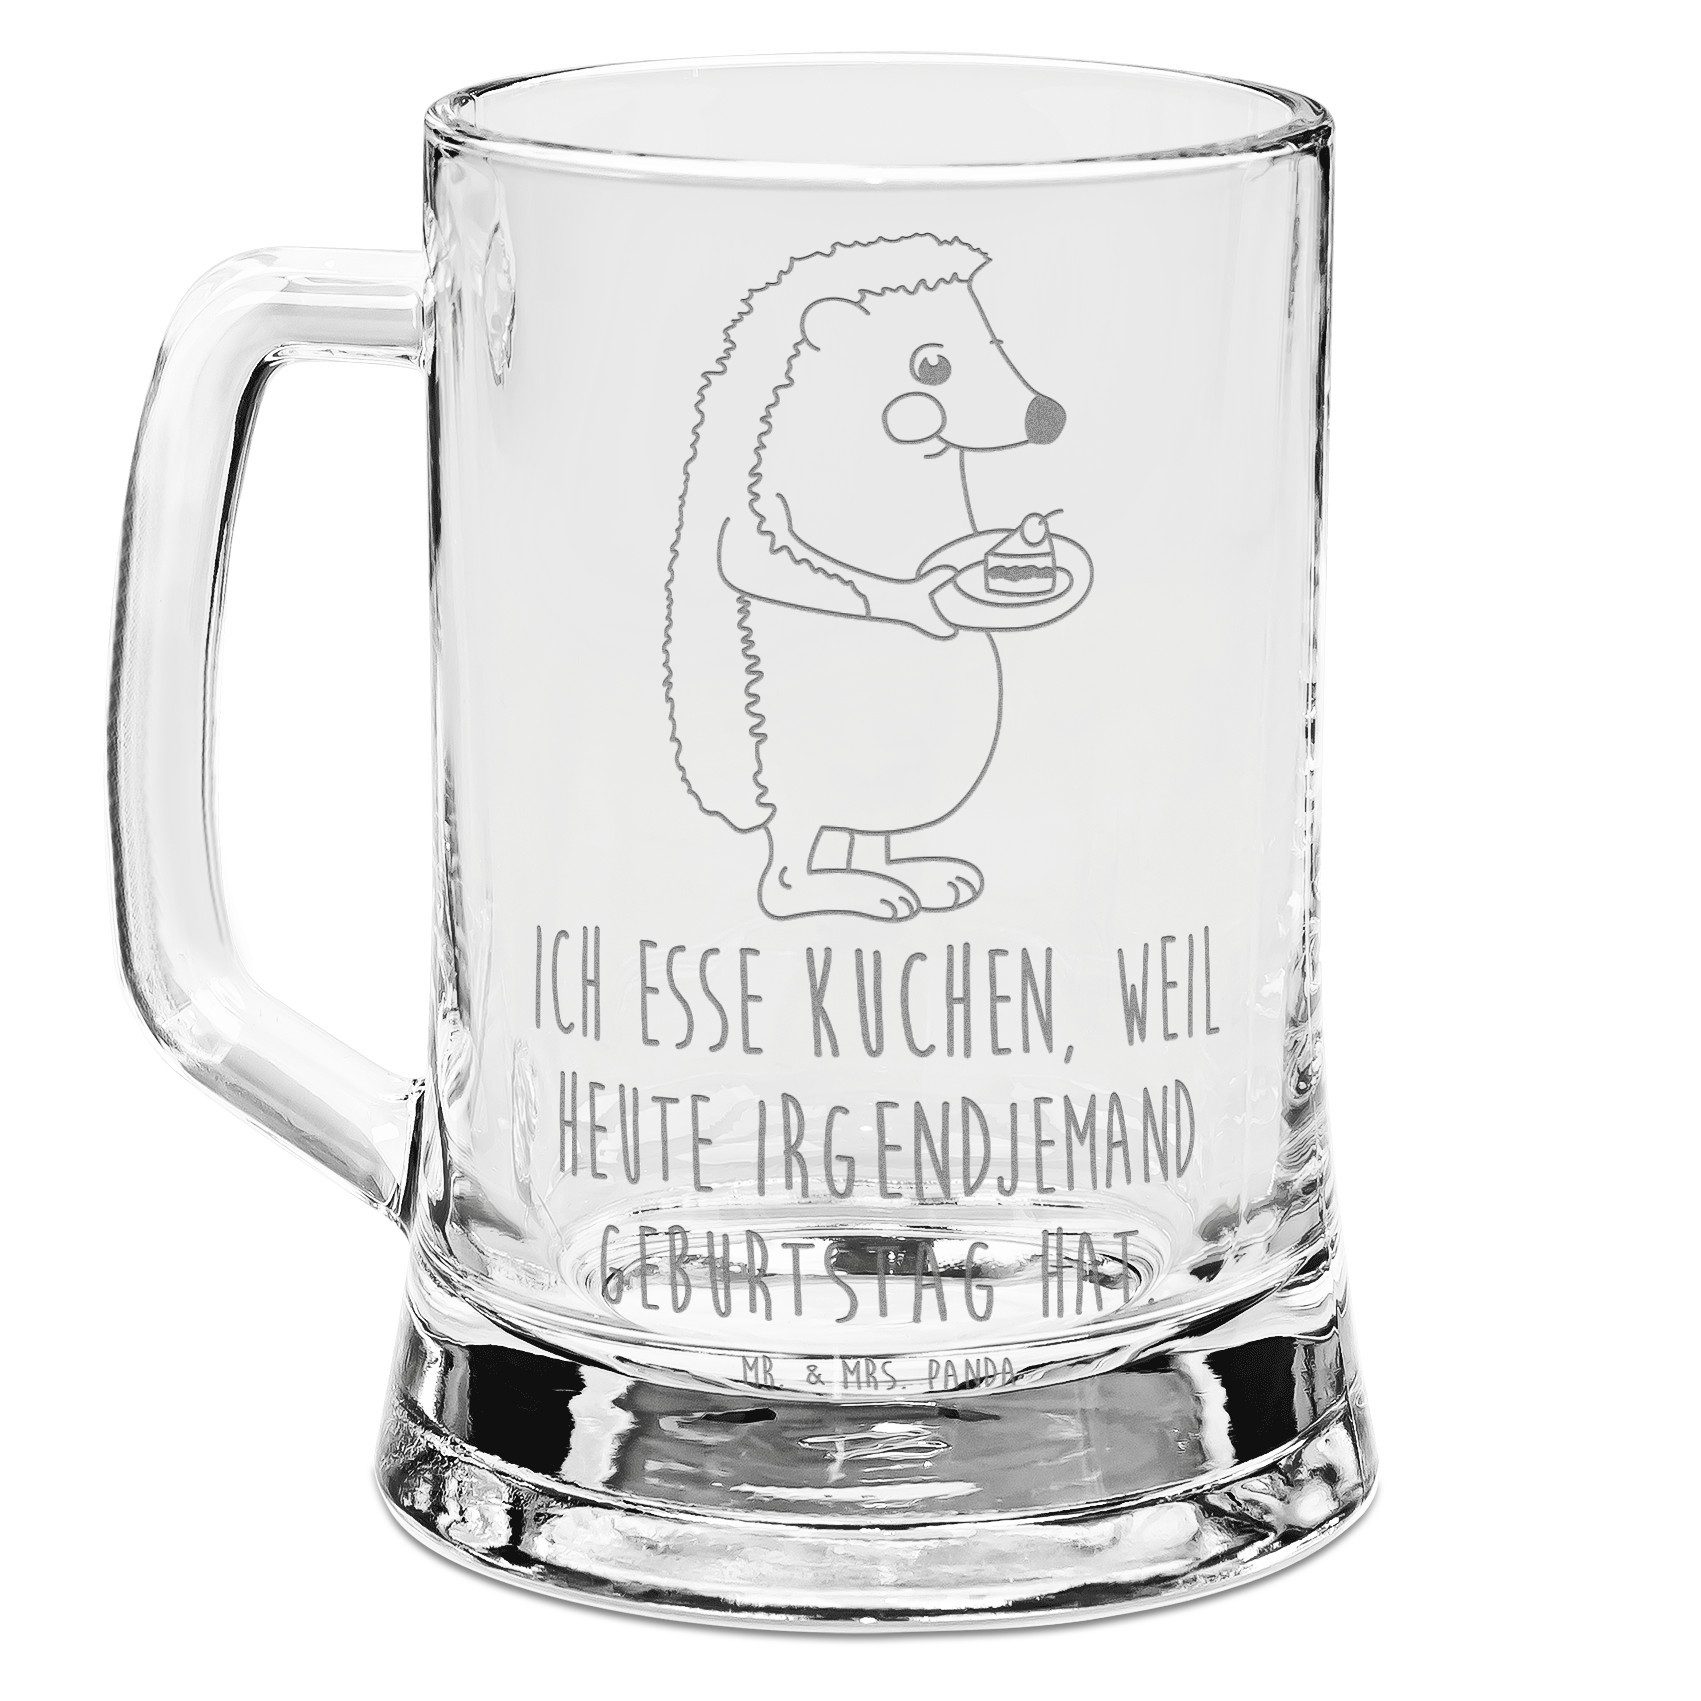 Mr. & Mrs. Panda Bierkrug Igel Kuchenstück - Transparent - Geschenk, Einladung Party, lustige S, Premium Glas, Lasergravur